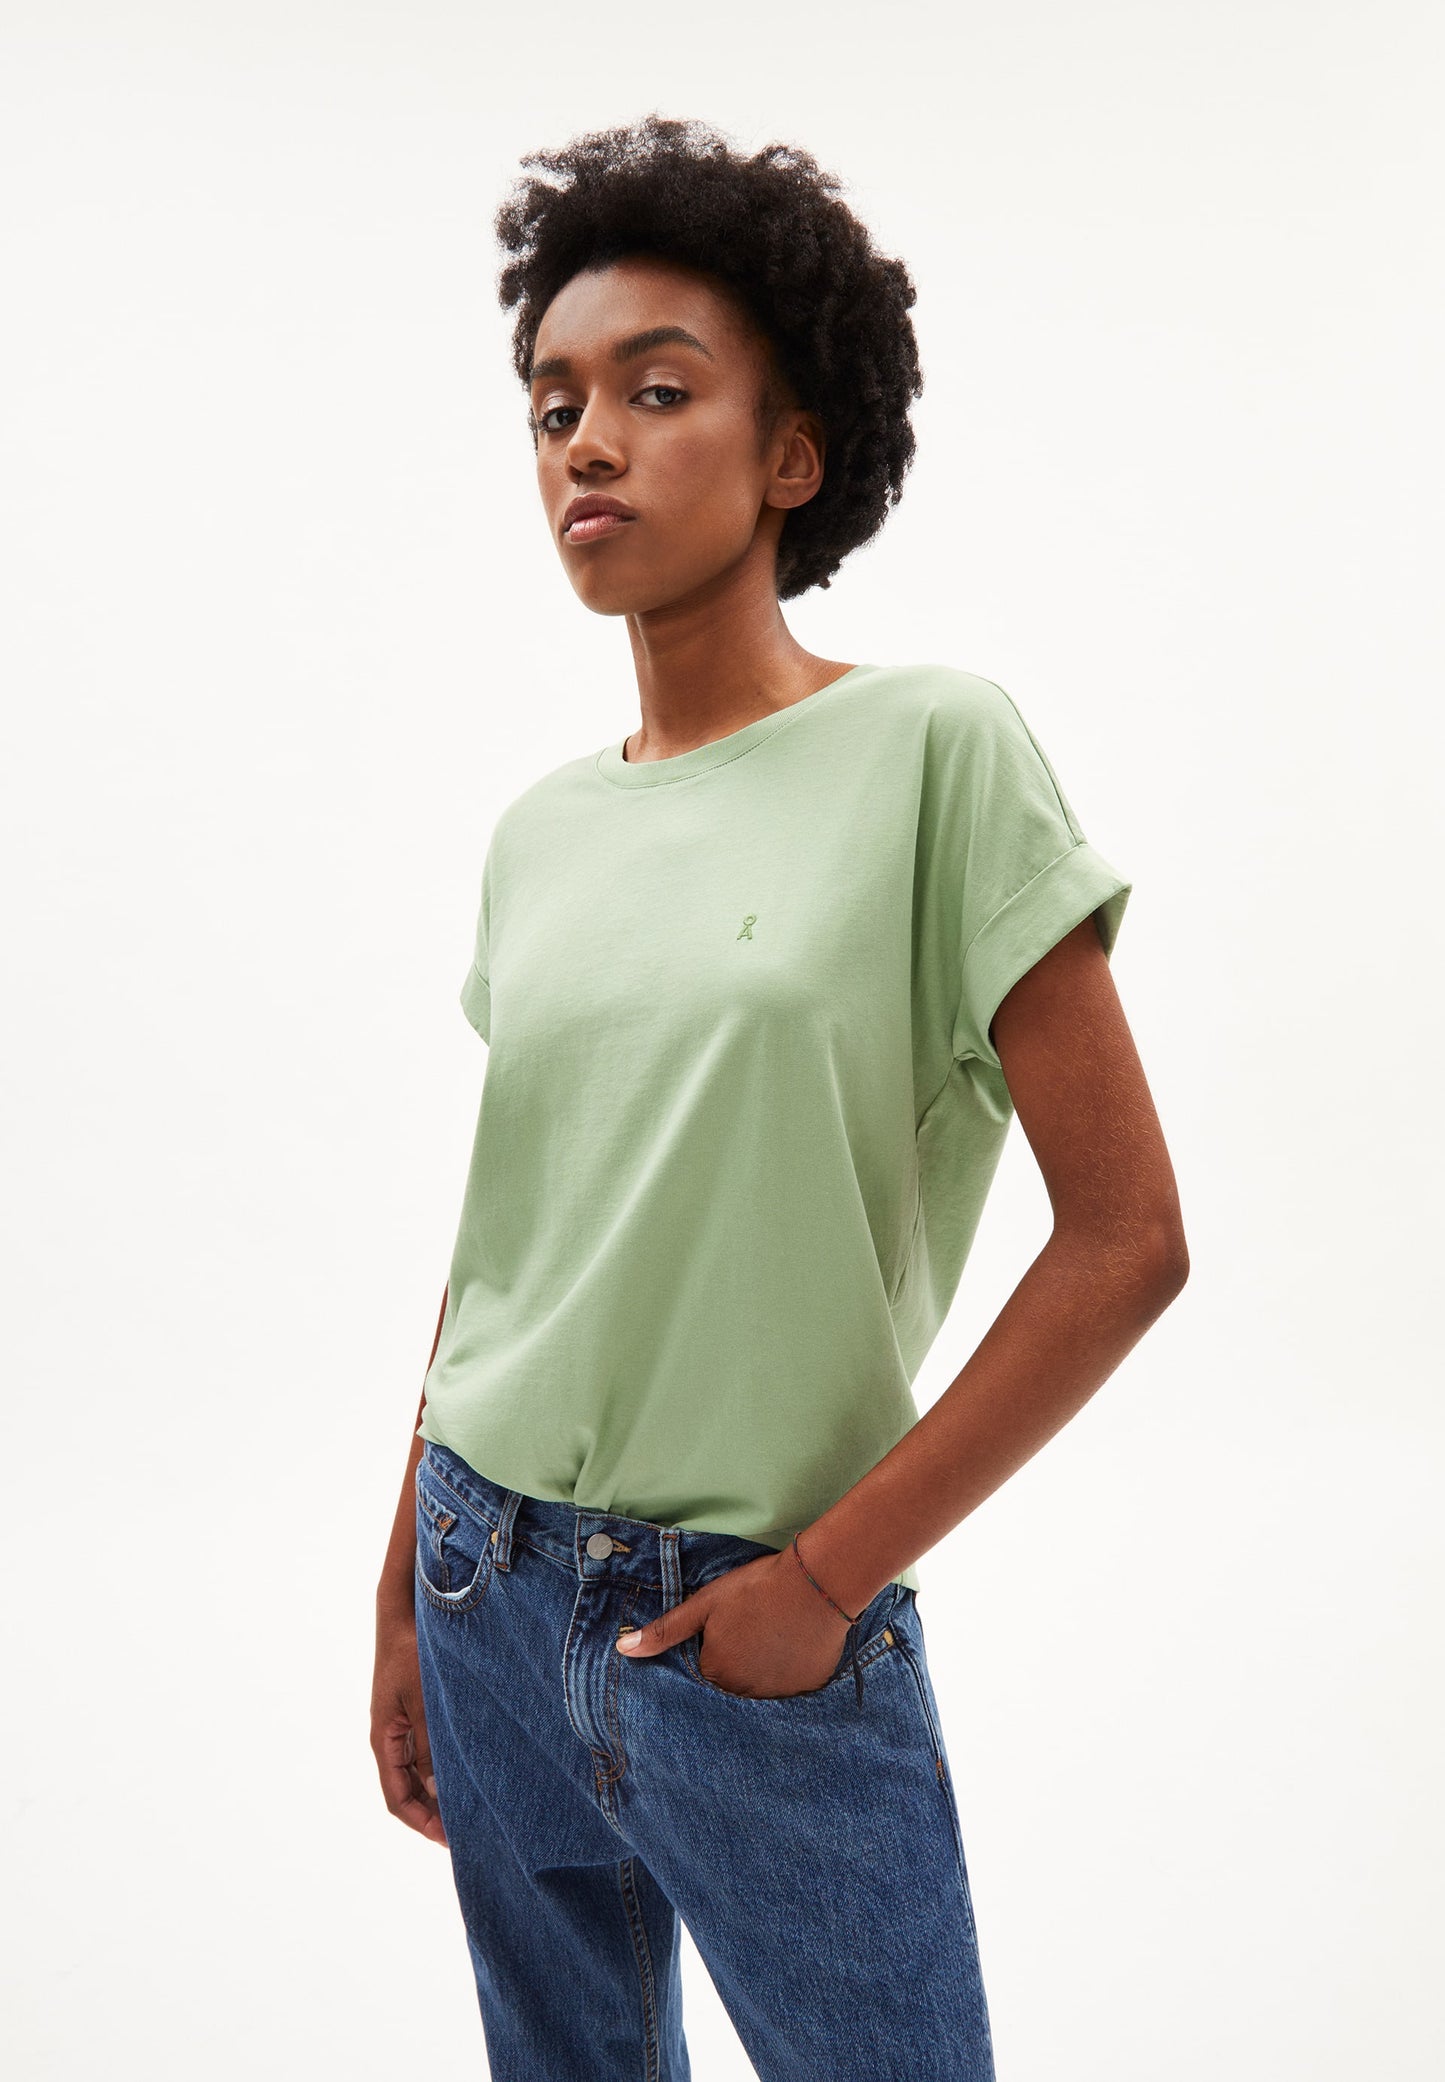 
                  
                    IDAARA Smith Grünes T-Shirt
                  
                